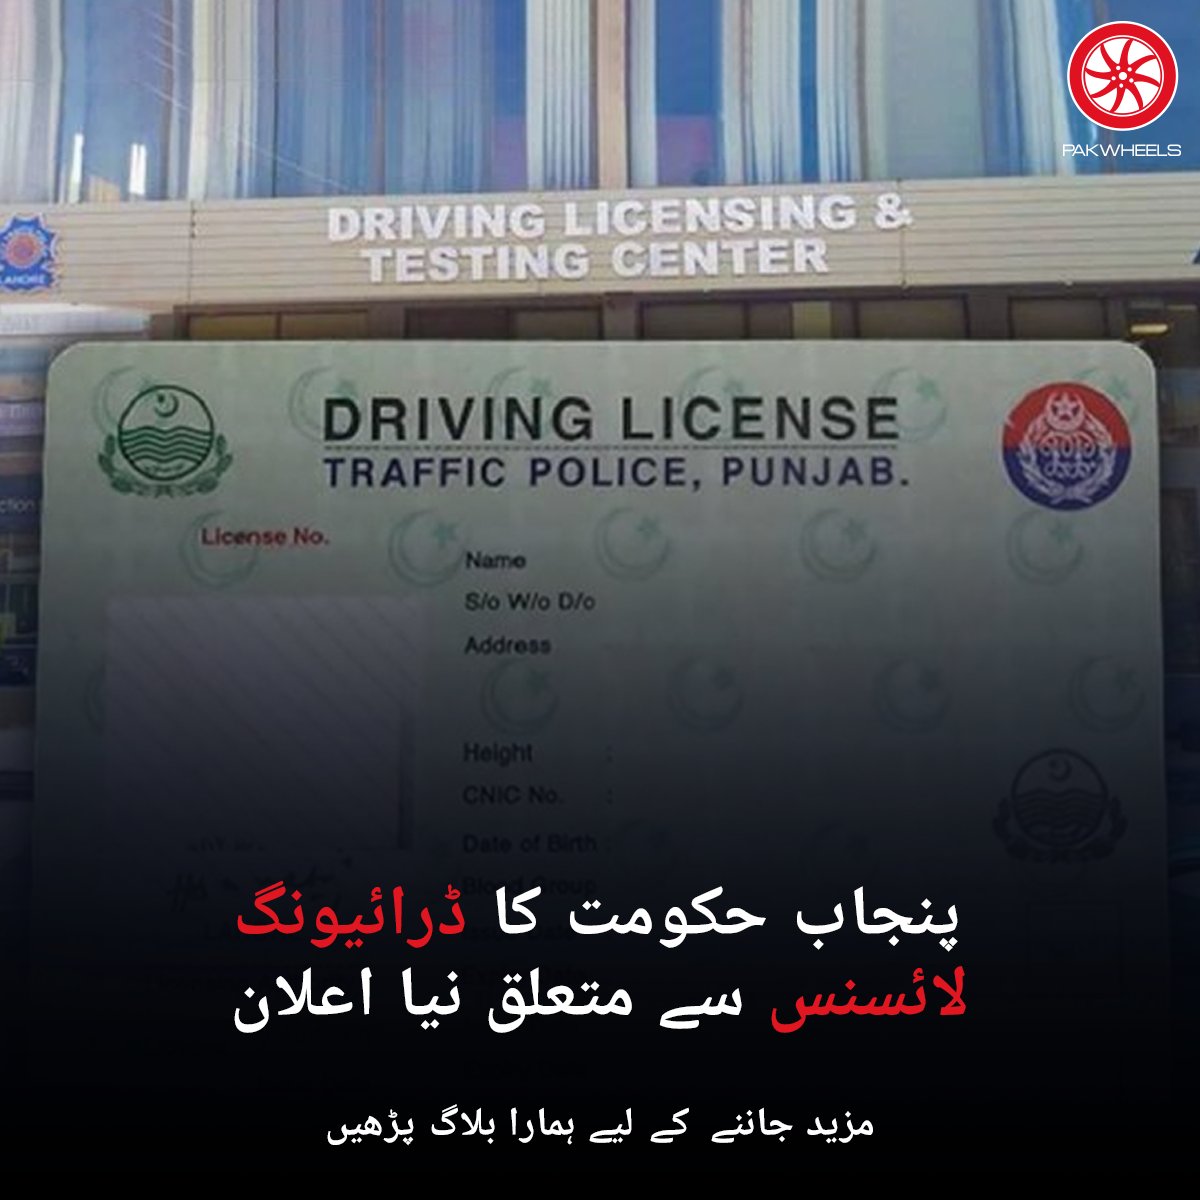 پنجاب میں ڈرائیونگ لائسنس اب ایک بنیادی خبر بن چکا ہے، خاص طور پر ایک خوفناک حادثے کے بعد جس نے ایک ہی خاندان کے چھ افراد کو اپنی لپیٹ میں لے لیا۔

مزید پڑھیں: ow.ly/QWsh50QqS4J

#PakWheels #PWBlogs #Punjab #DrivingLicense